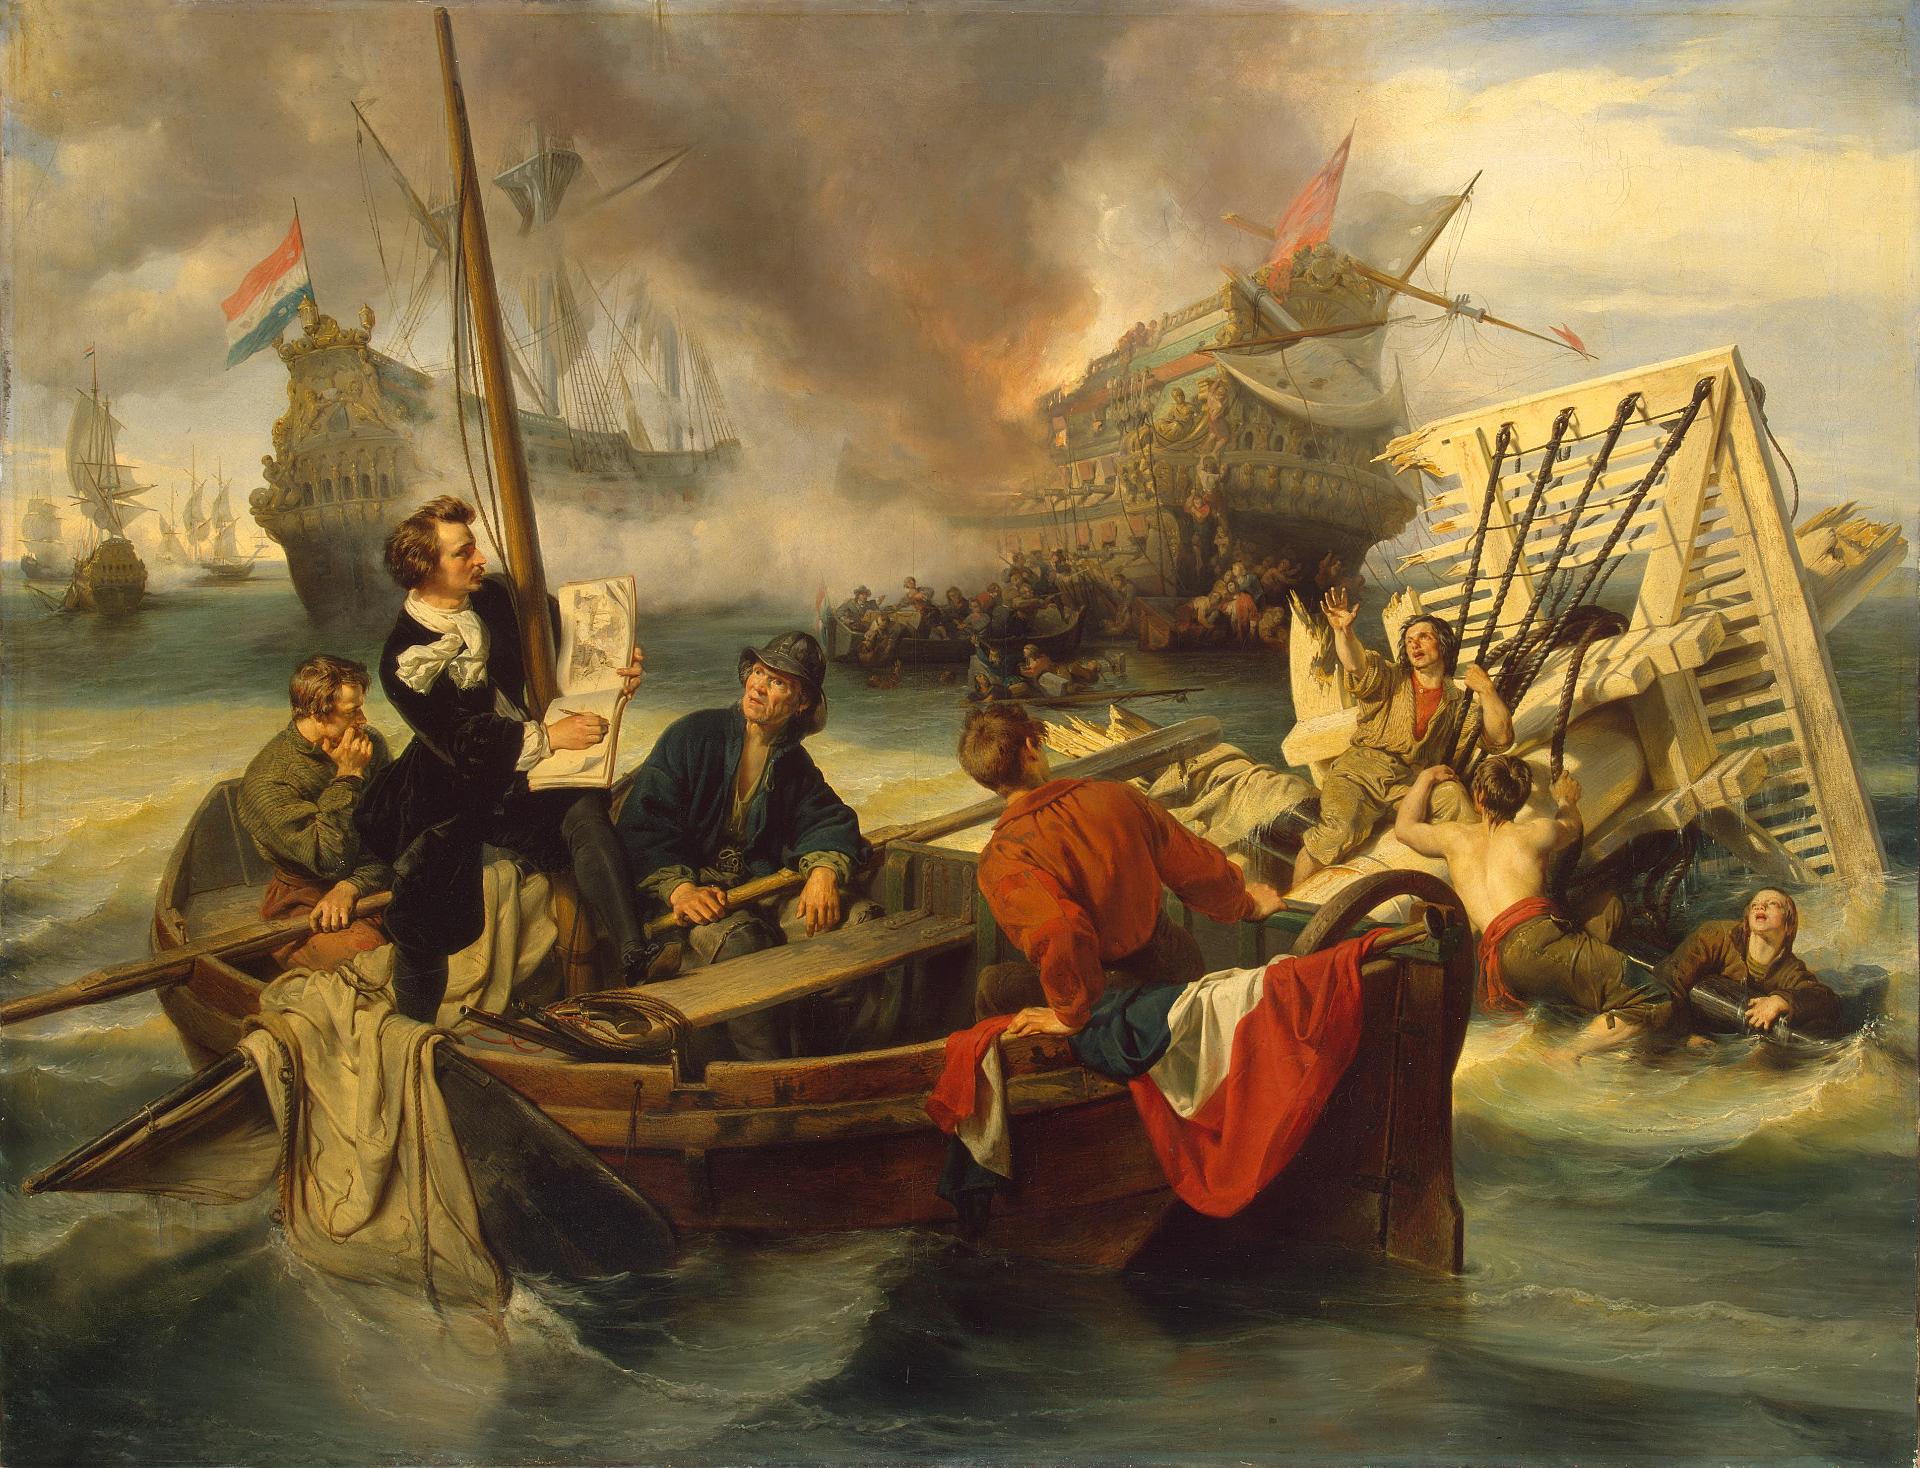 И. Дехой. "Виллем ван де Вельде, рисующий морское сражение". 1845. Эрмитаж, Санкт-Петербург.